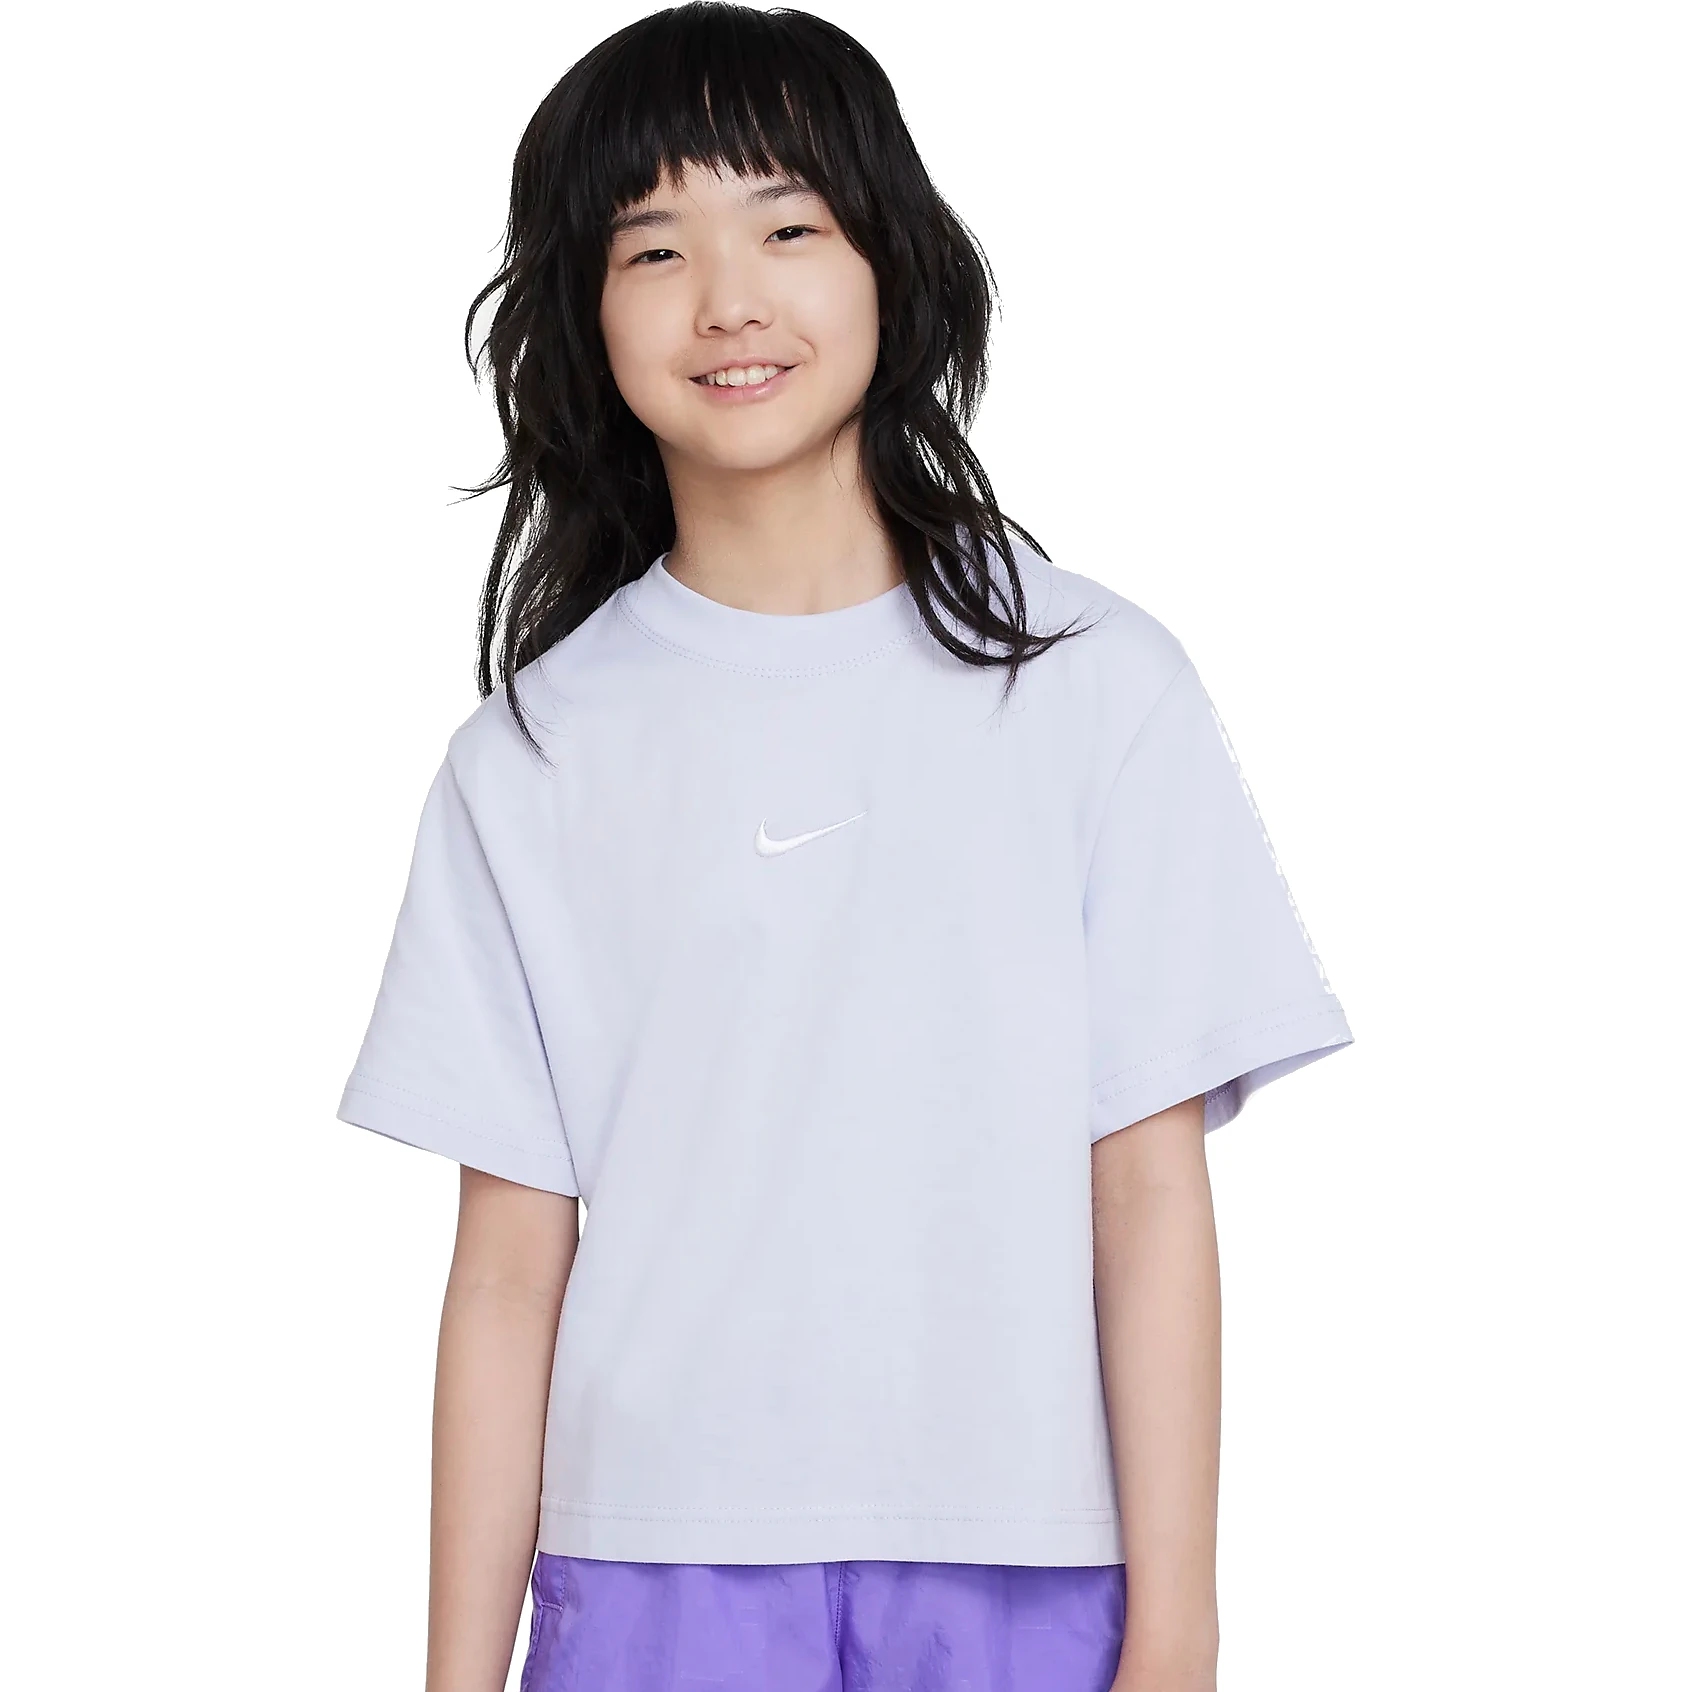 Produktbild von Nike Sportswear T-Shirt für ältere Kinder - oxygen purple DH5750-536